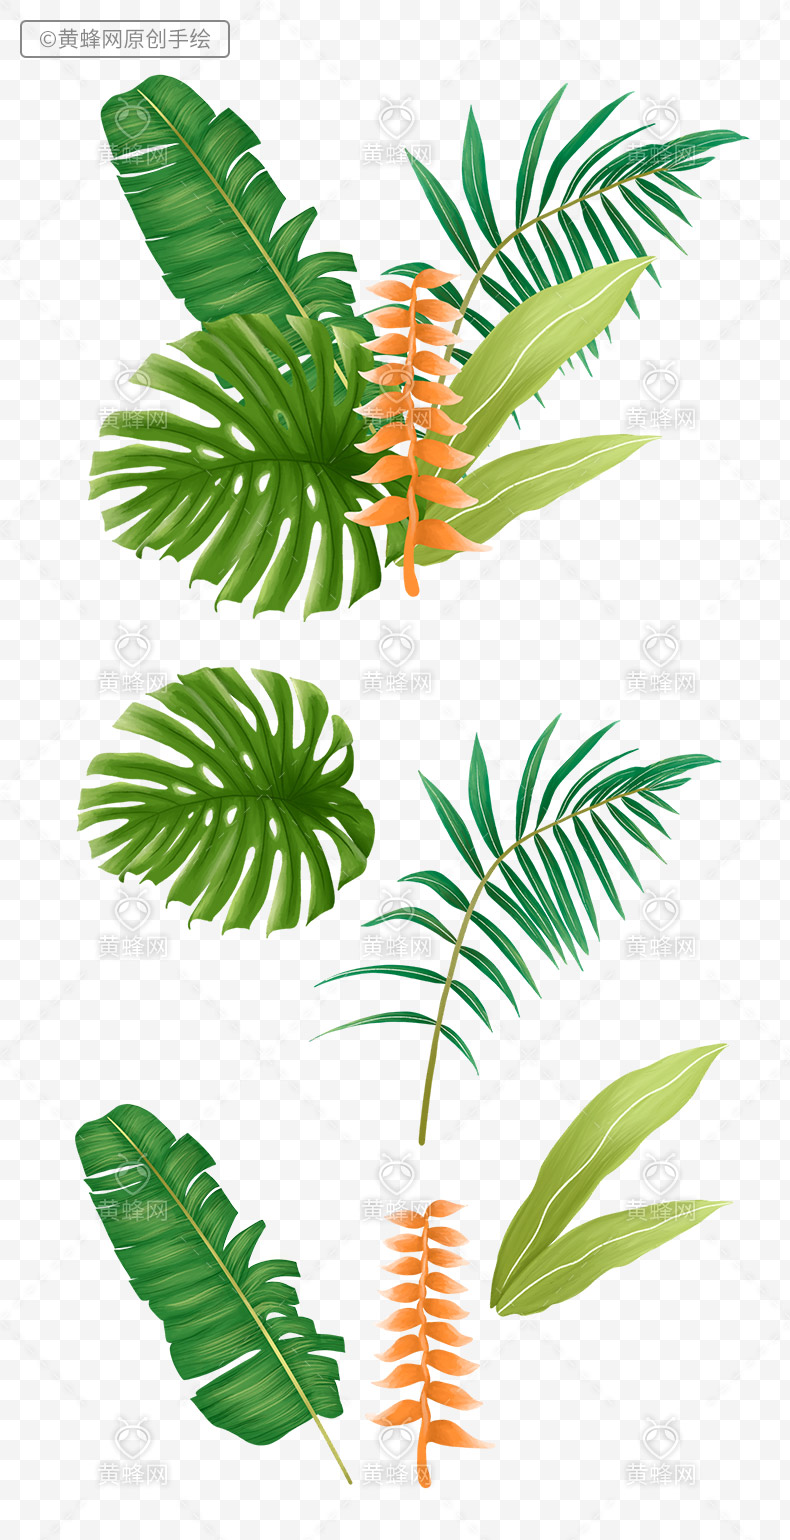 手绘植物叶子,植物叶子,手绘叶子,手绘绿叶,绿叶,夏天,夏季,夏天叶子,热带植物叶子,手绘热带雨林,png,免扣素材,